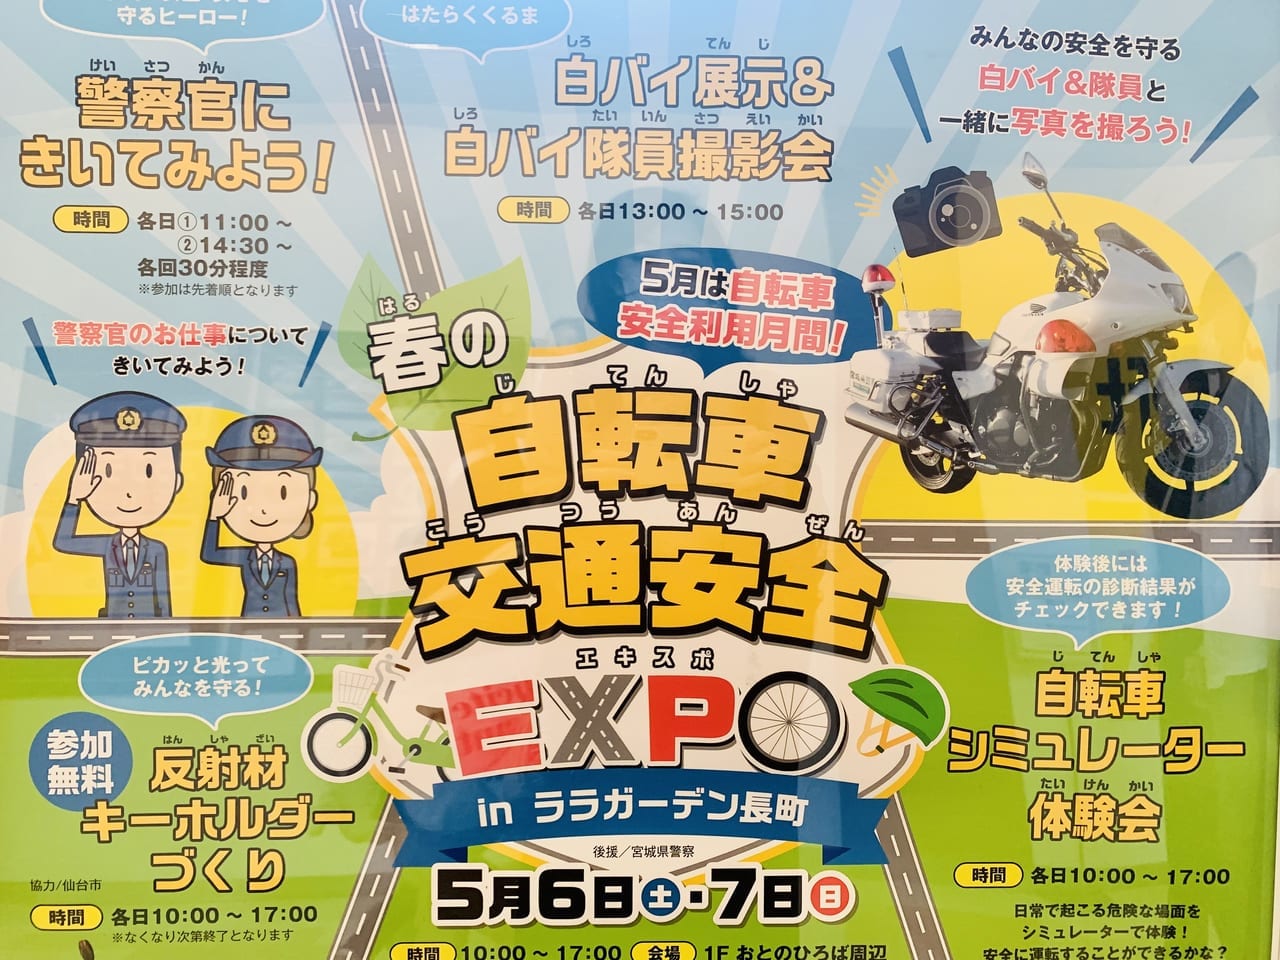 春の自転車交通安全EXPO